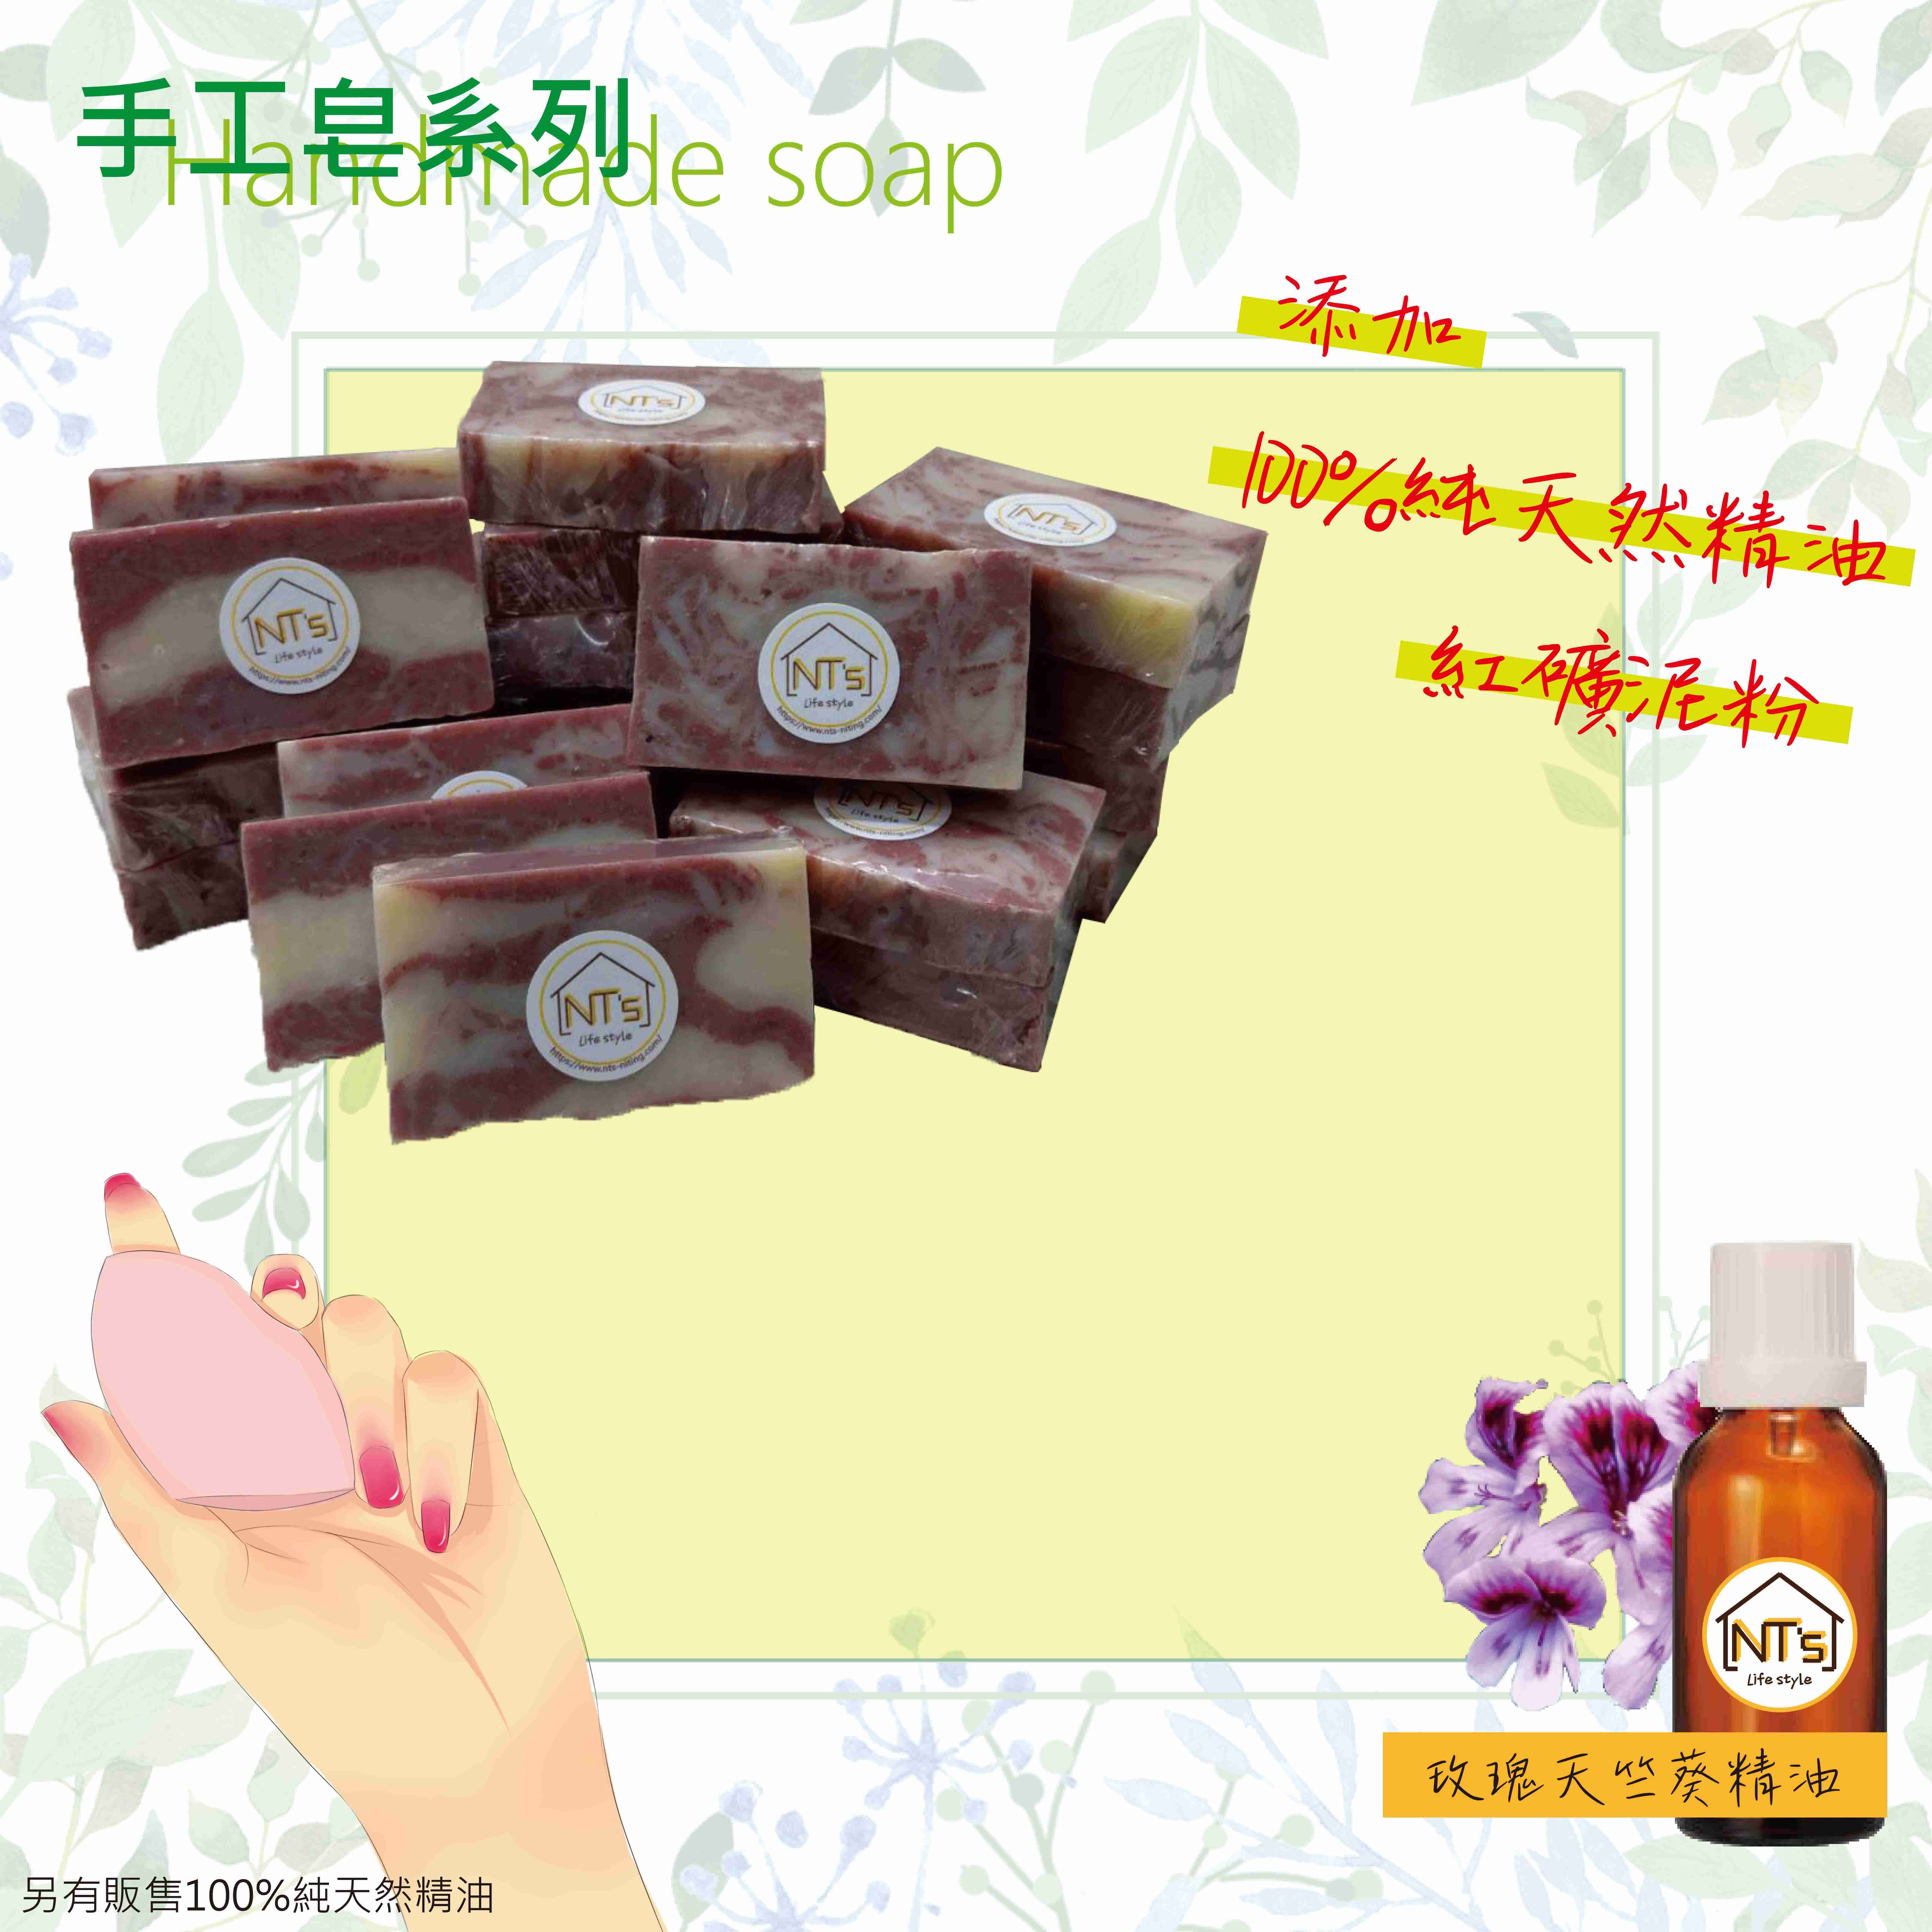 玫瑰清新沐浴皂(手工皂) Handmade soap